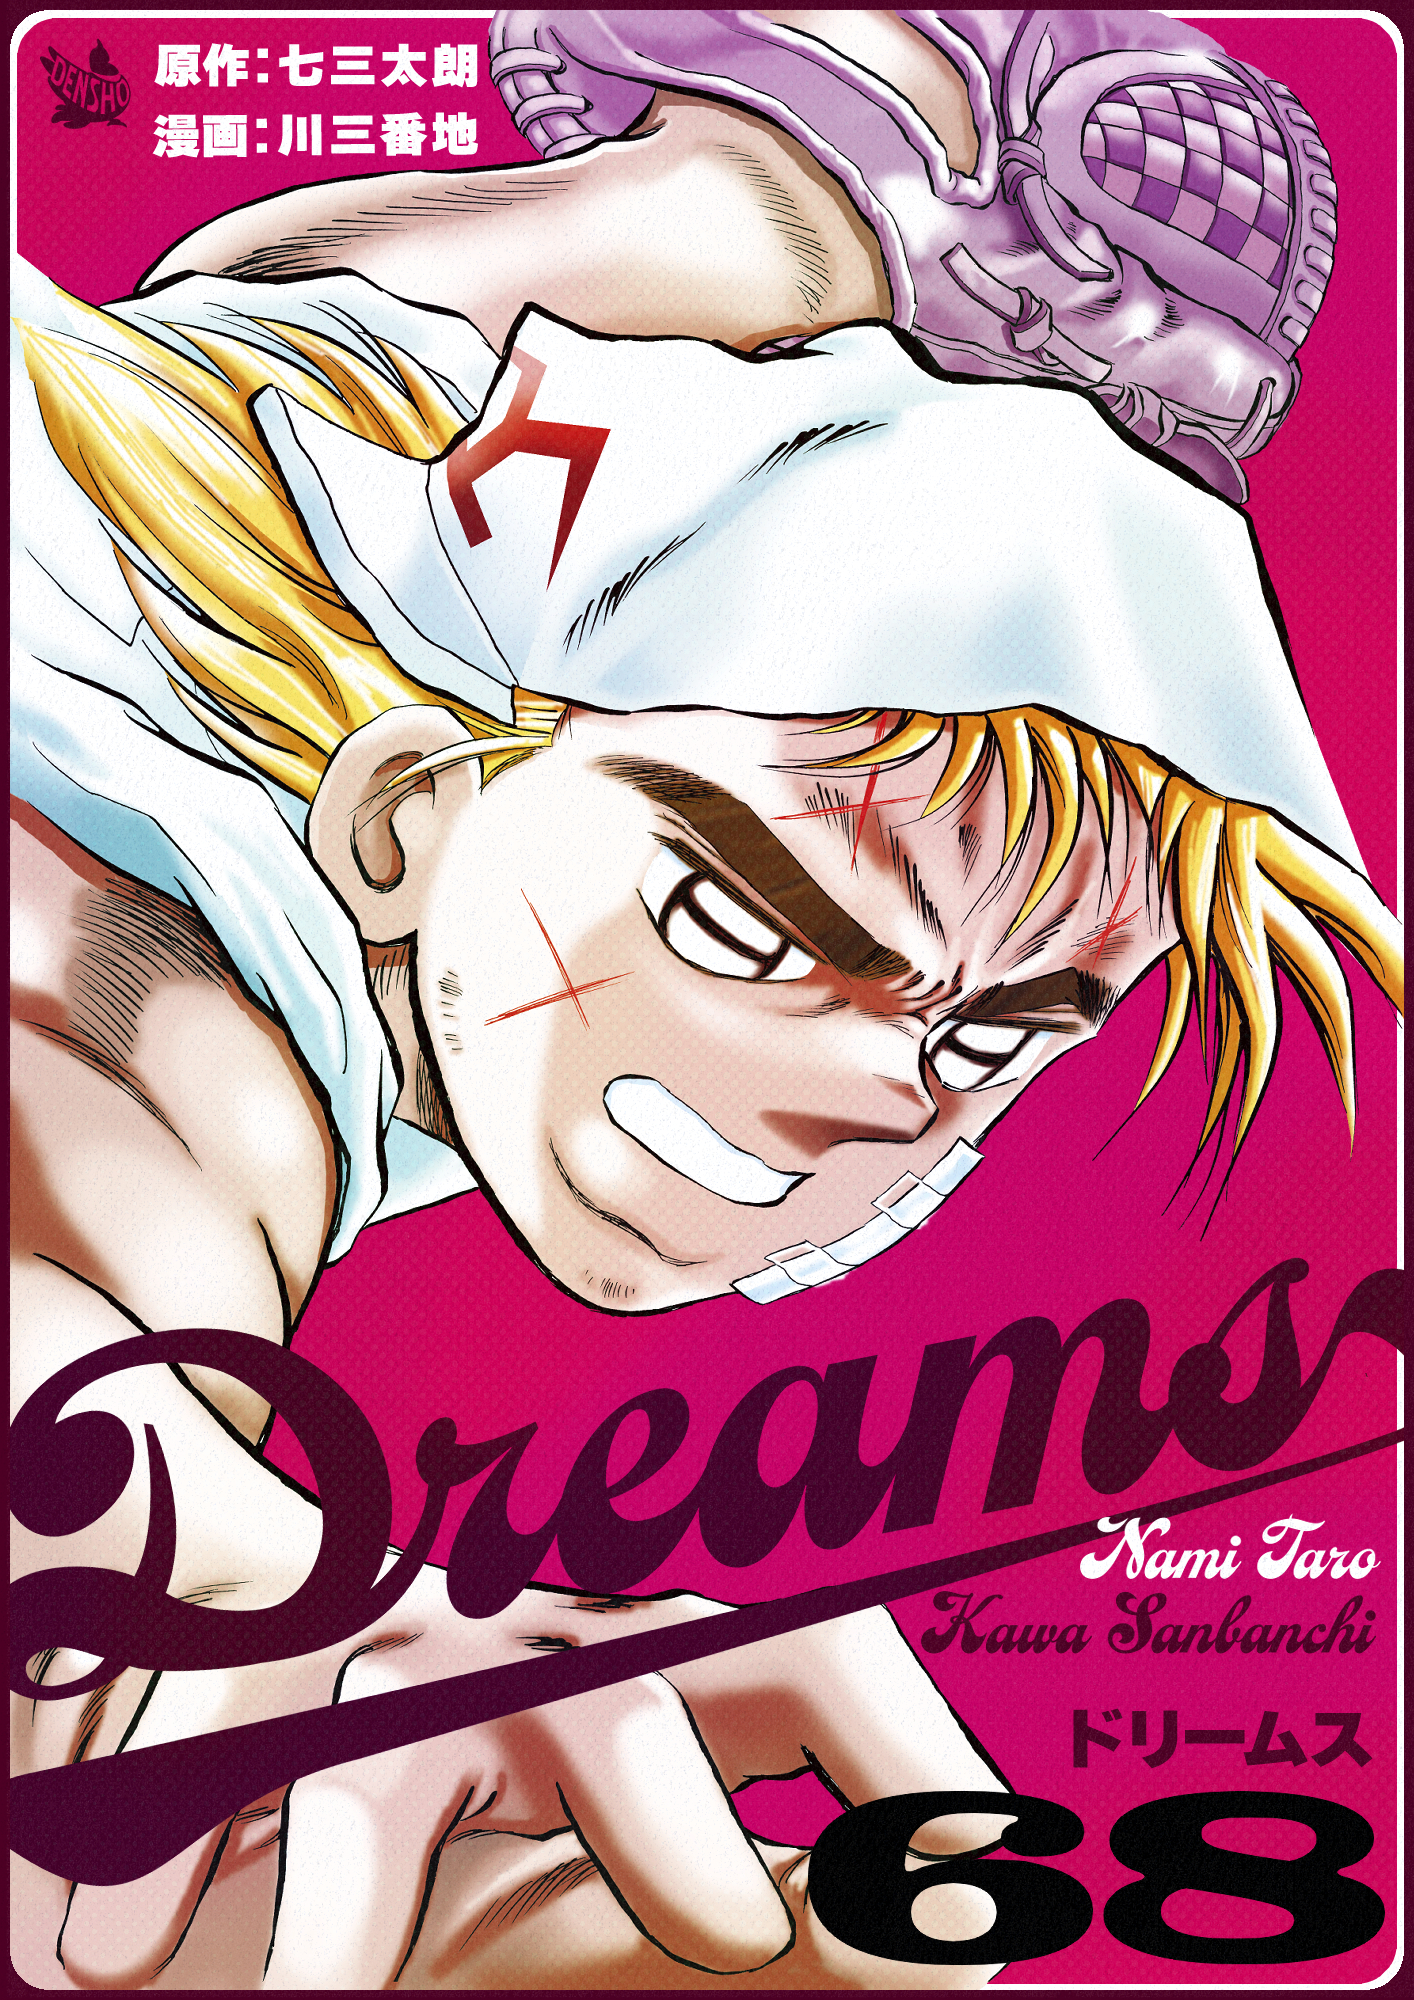 Dreams 全71巻セット 川三番地 七三太朗 - 漫画、コミック